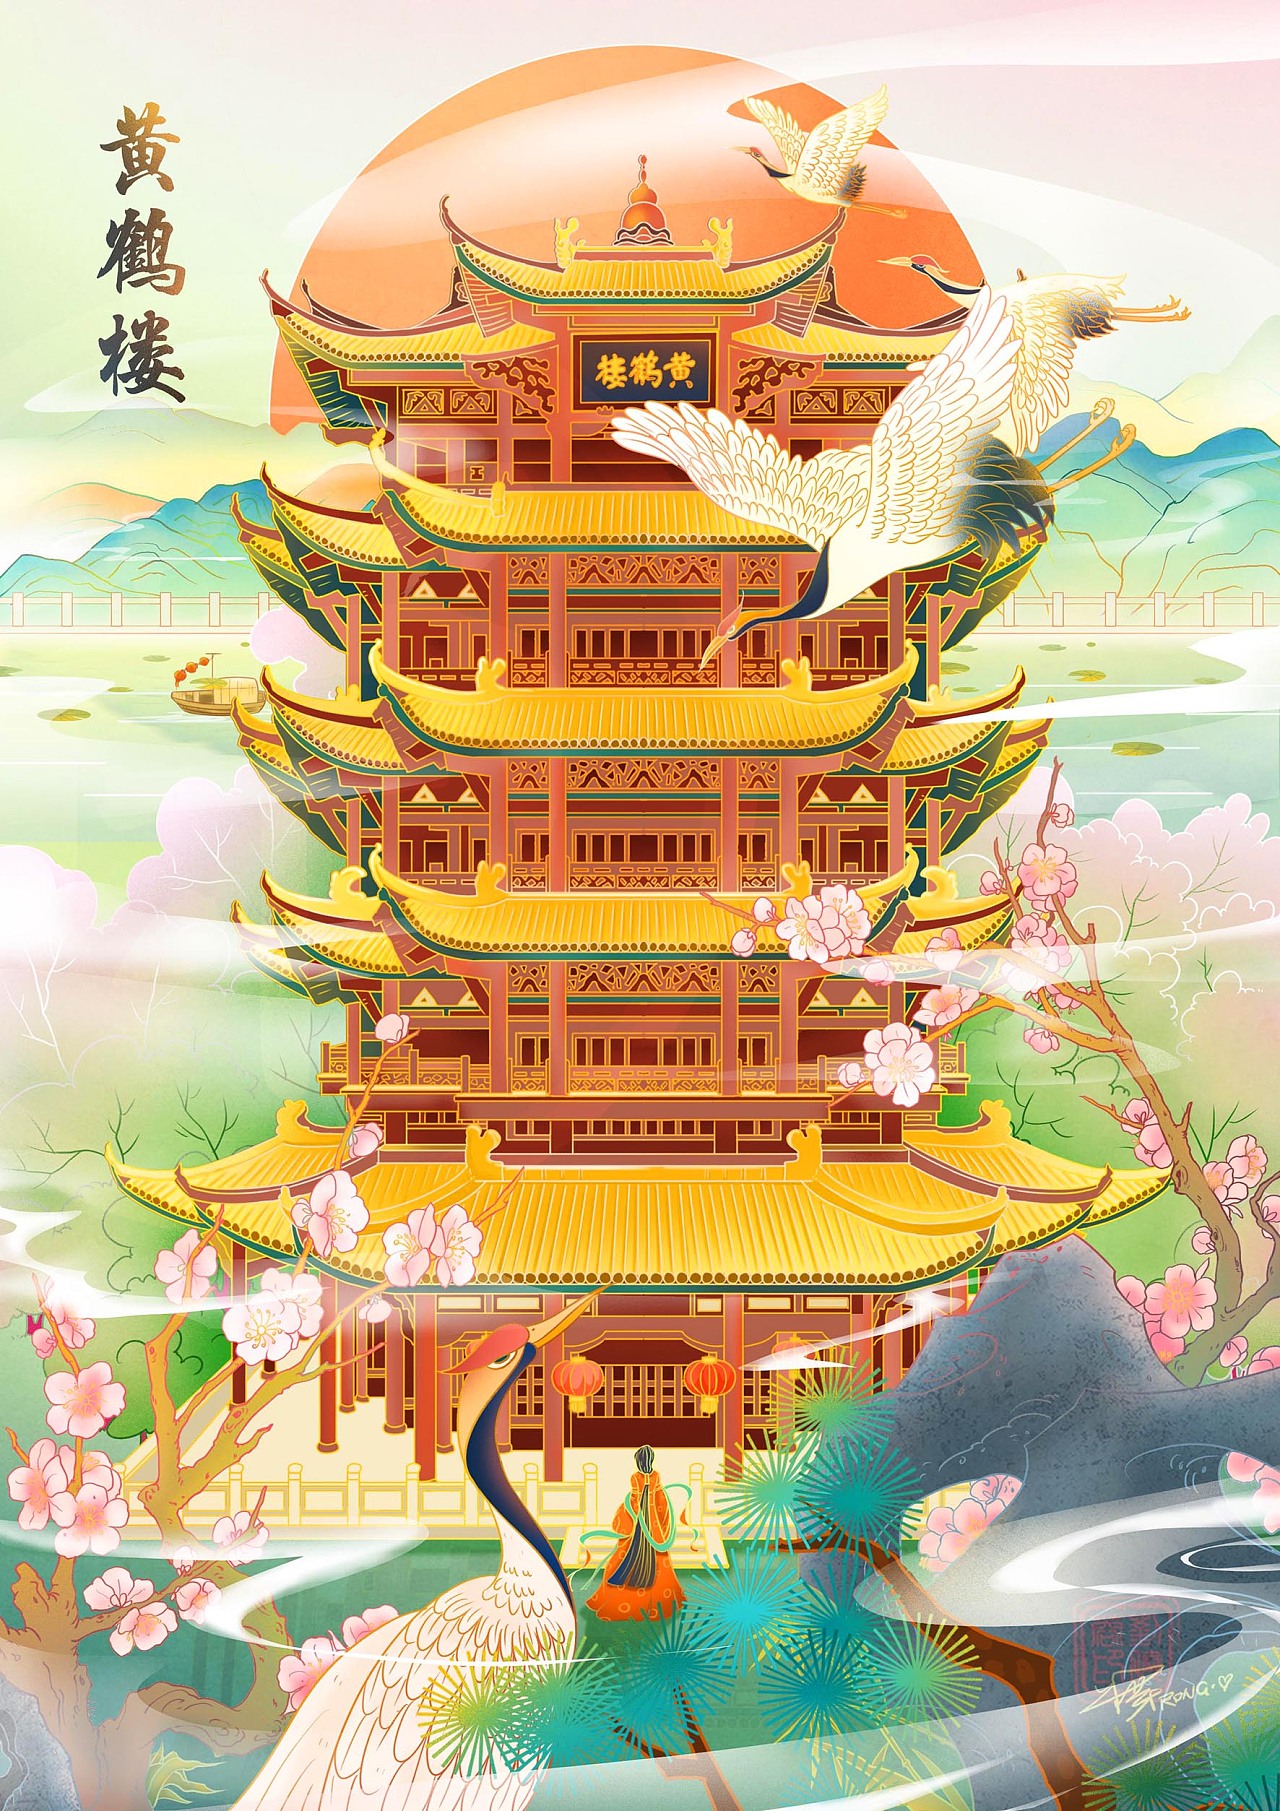 中国风古建插画 武汉市标志性建筑,黄鹤楼与晴川阁,古琴台并称"武汉